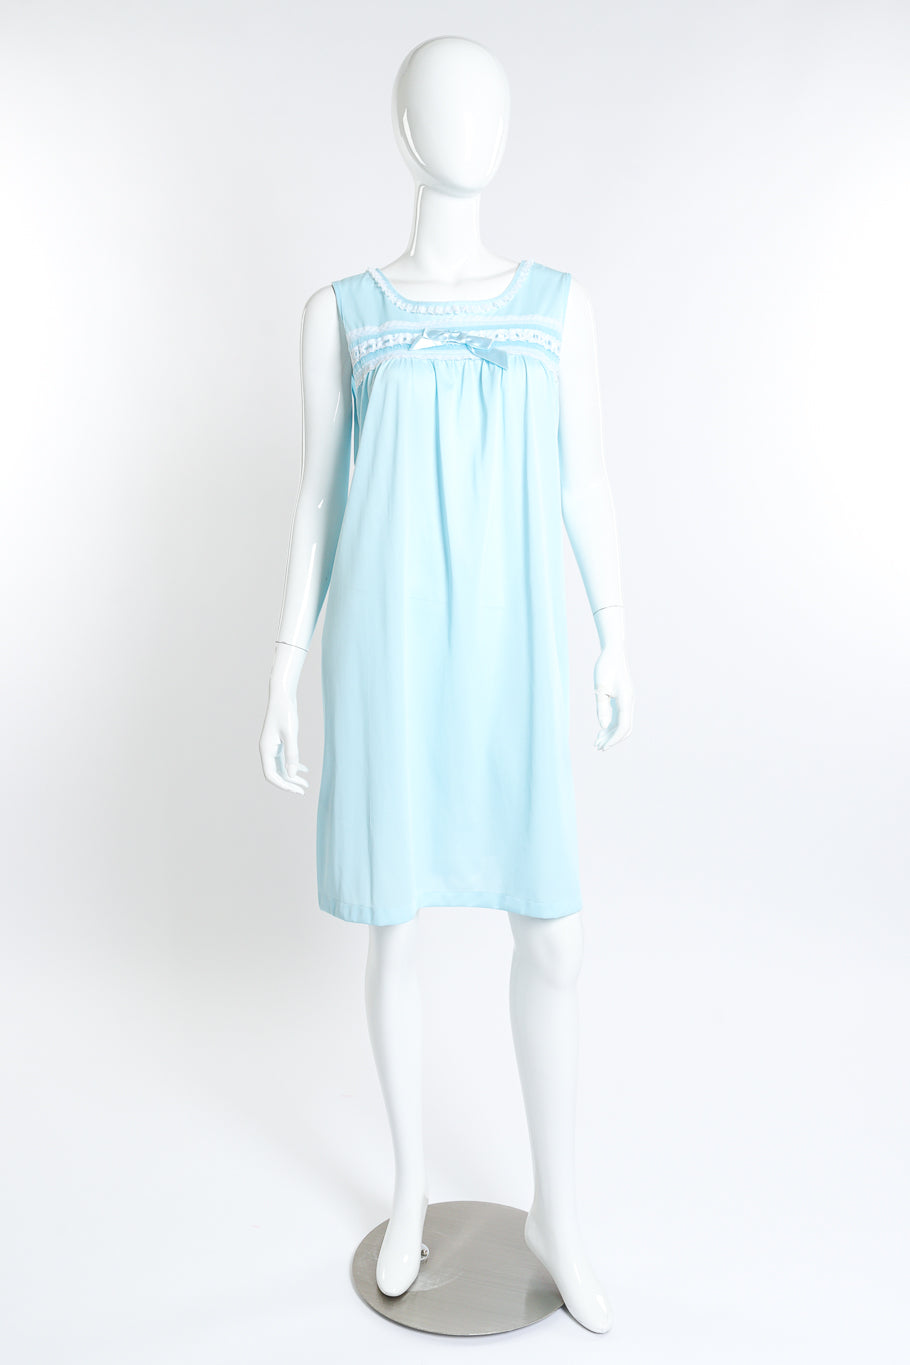 Vintage Sears Marabou Trim Robe & Chemise Set chemise front on mannequin @recess la